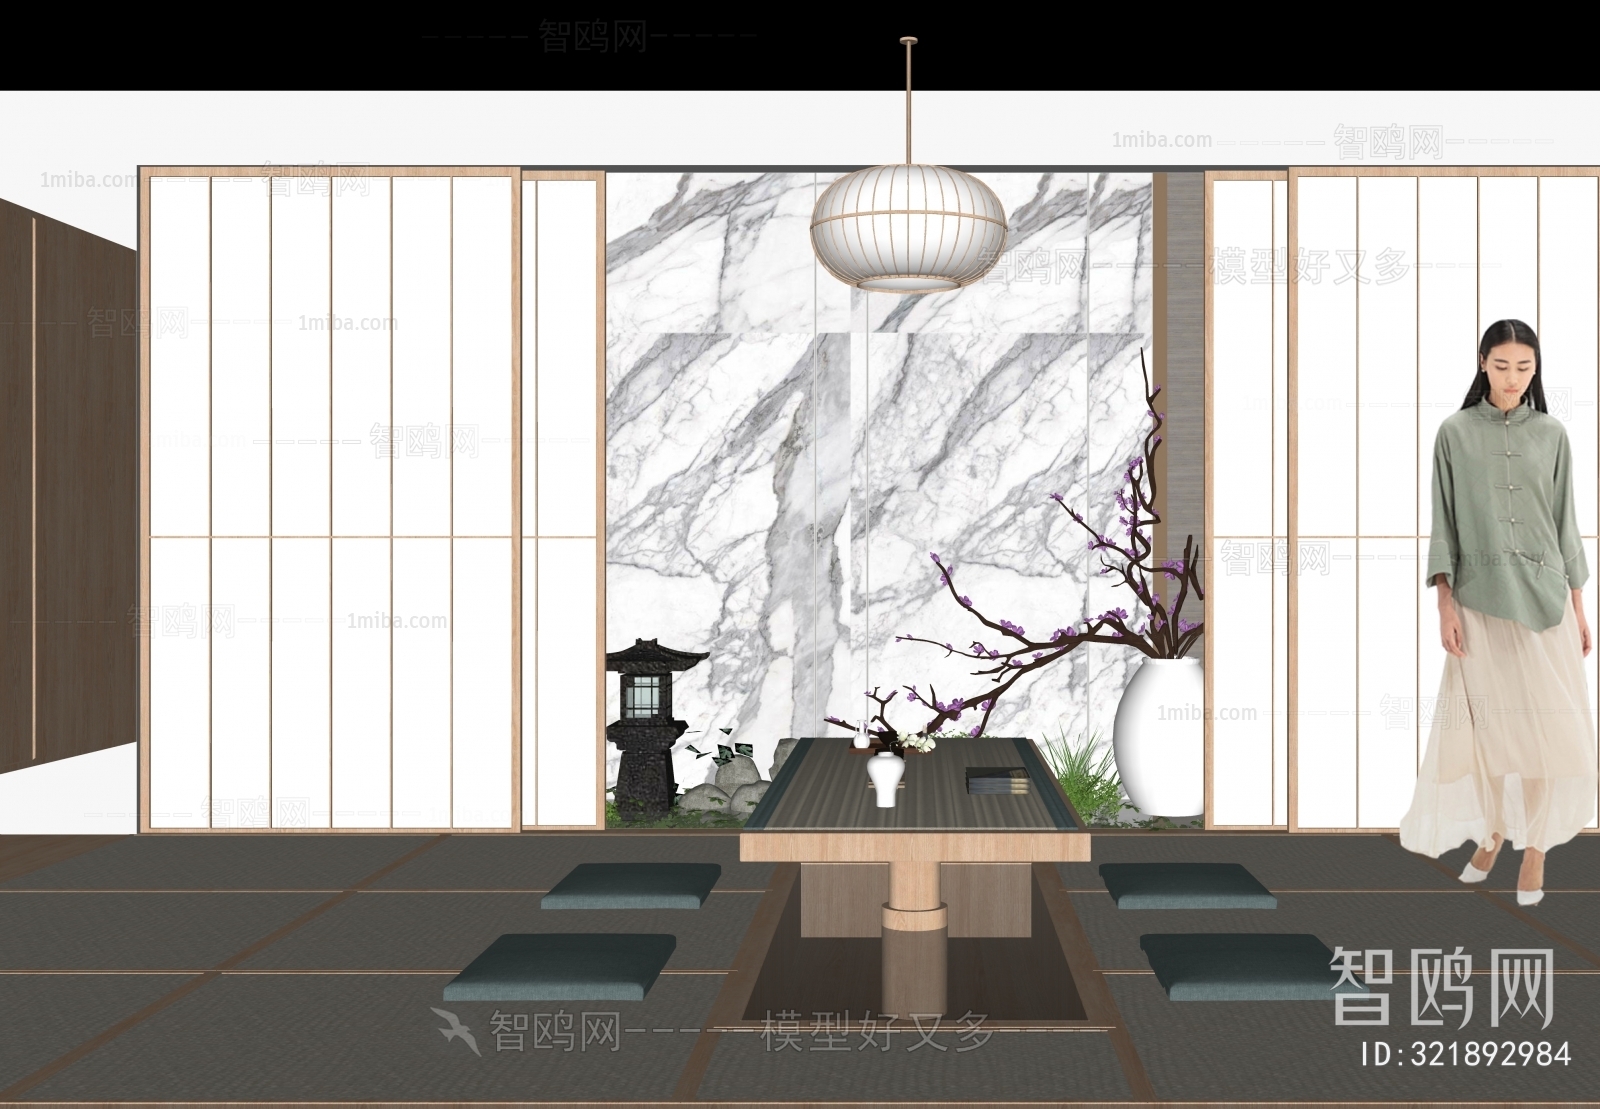 Japanese Style Tea House